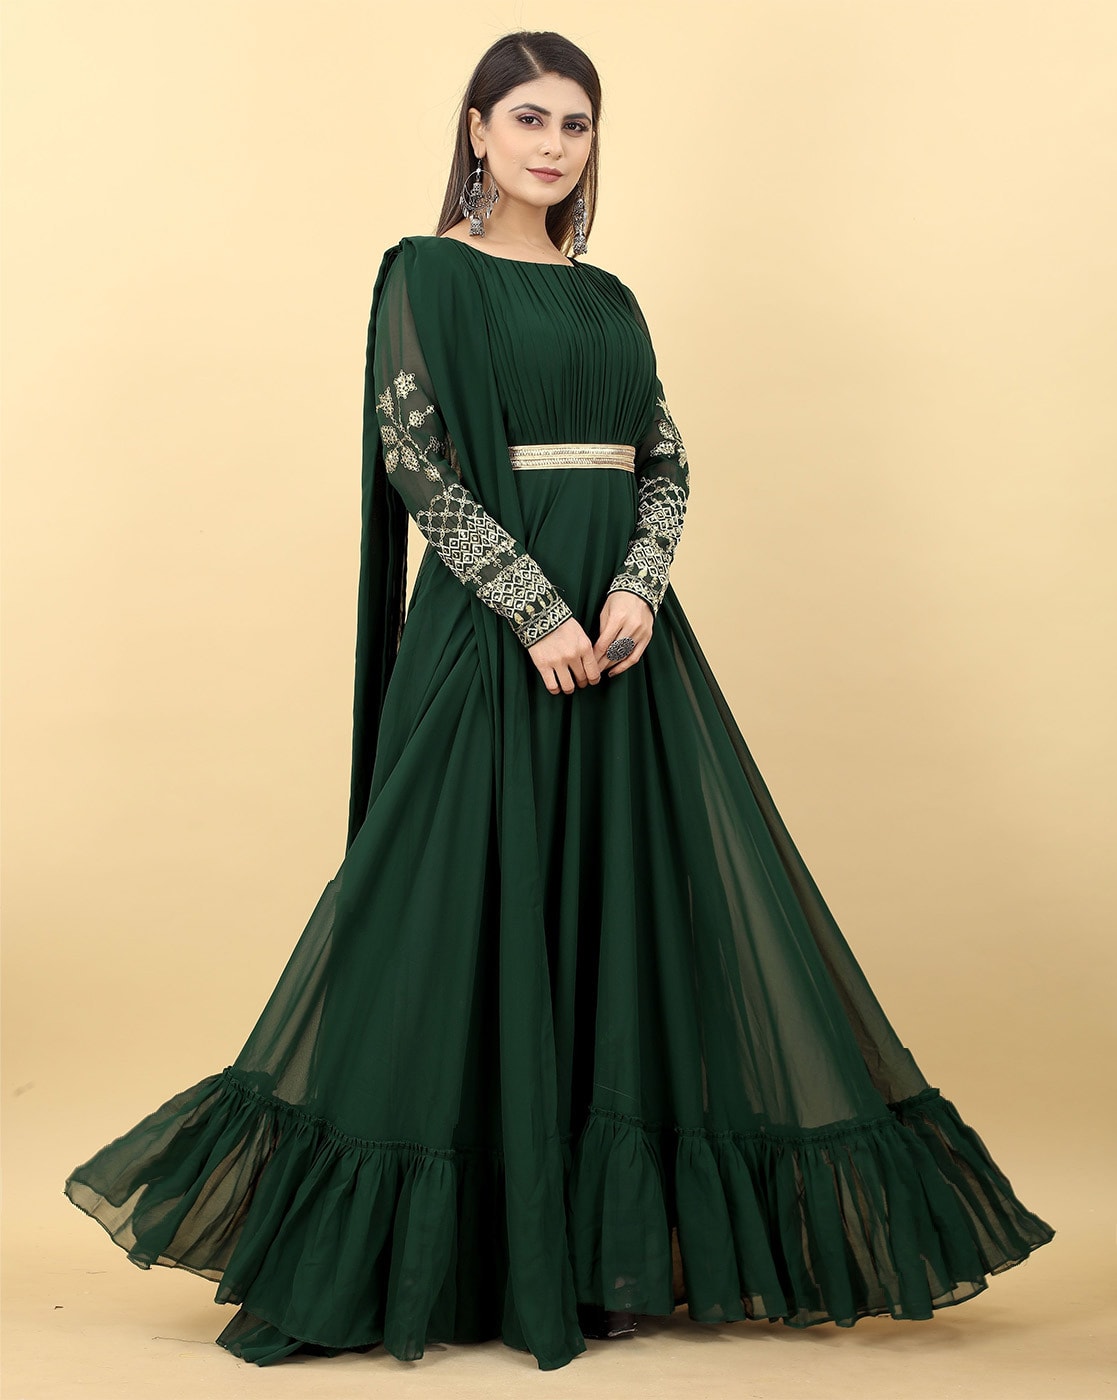 Green Modern Gowns For Indian Wedding Reception – Gunj Fashion